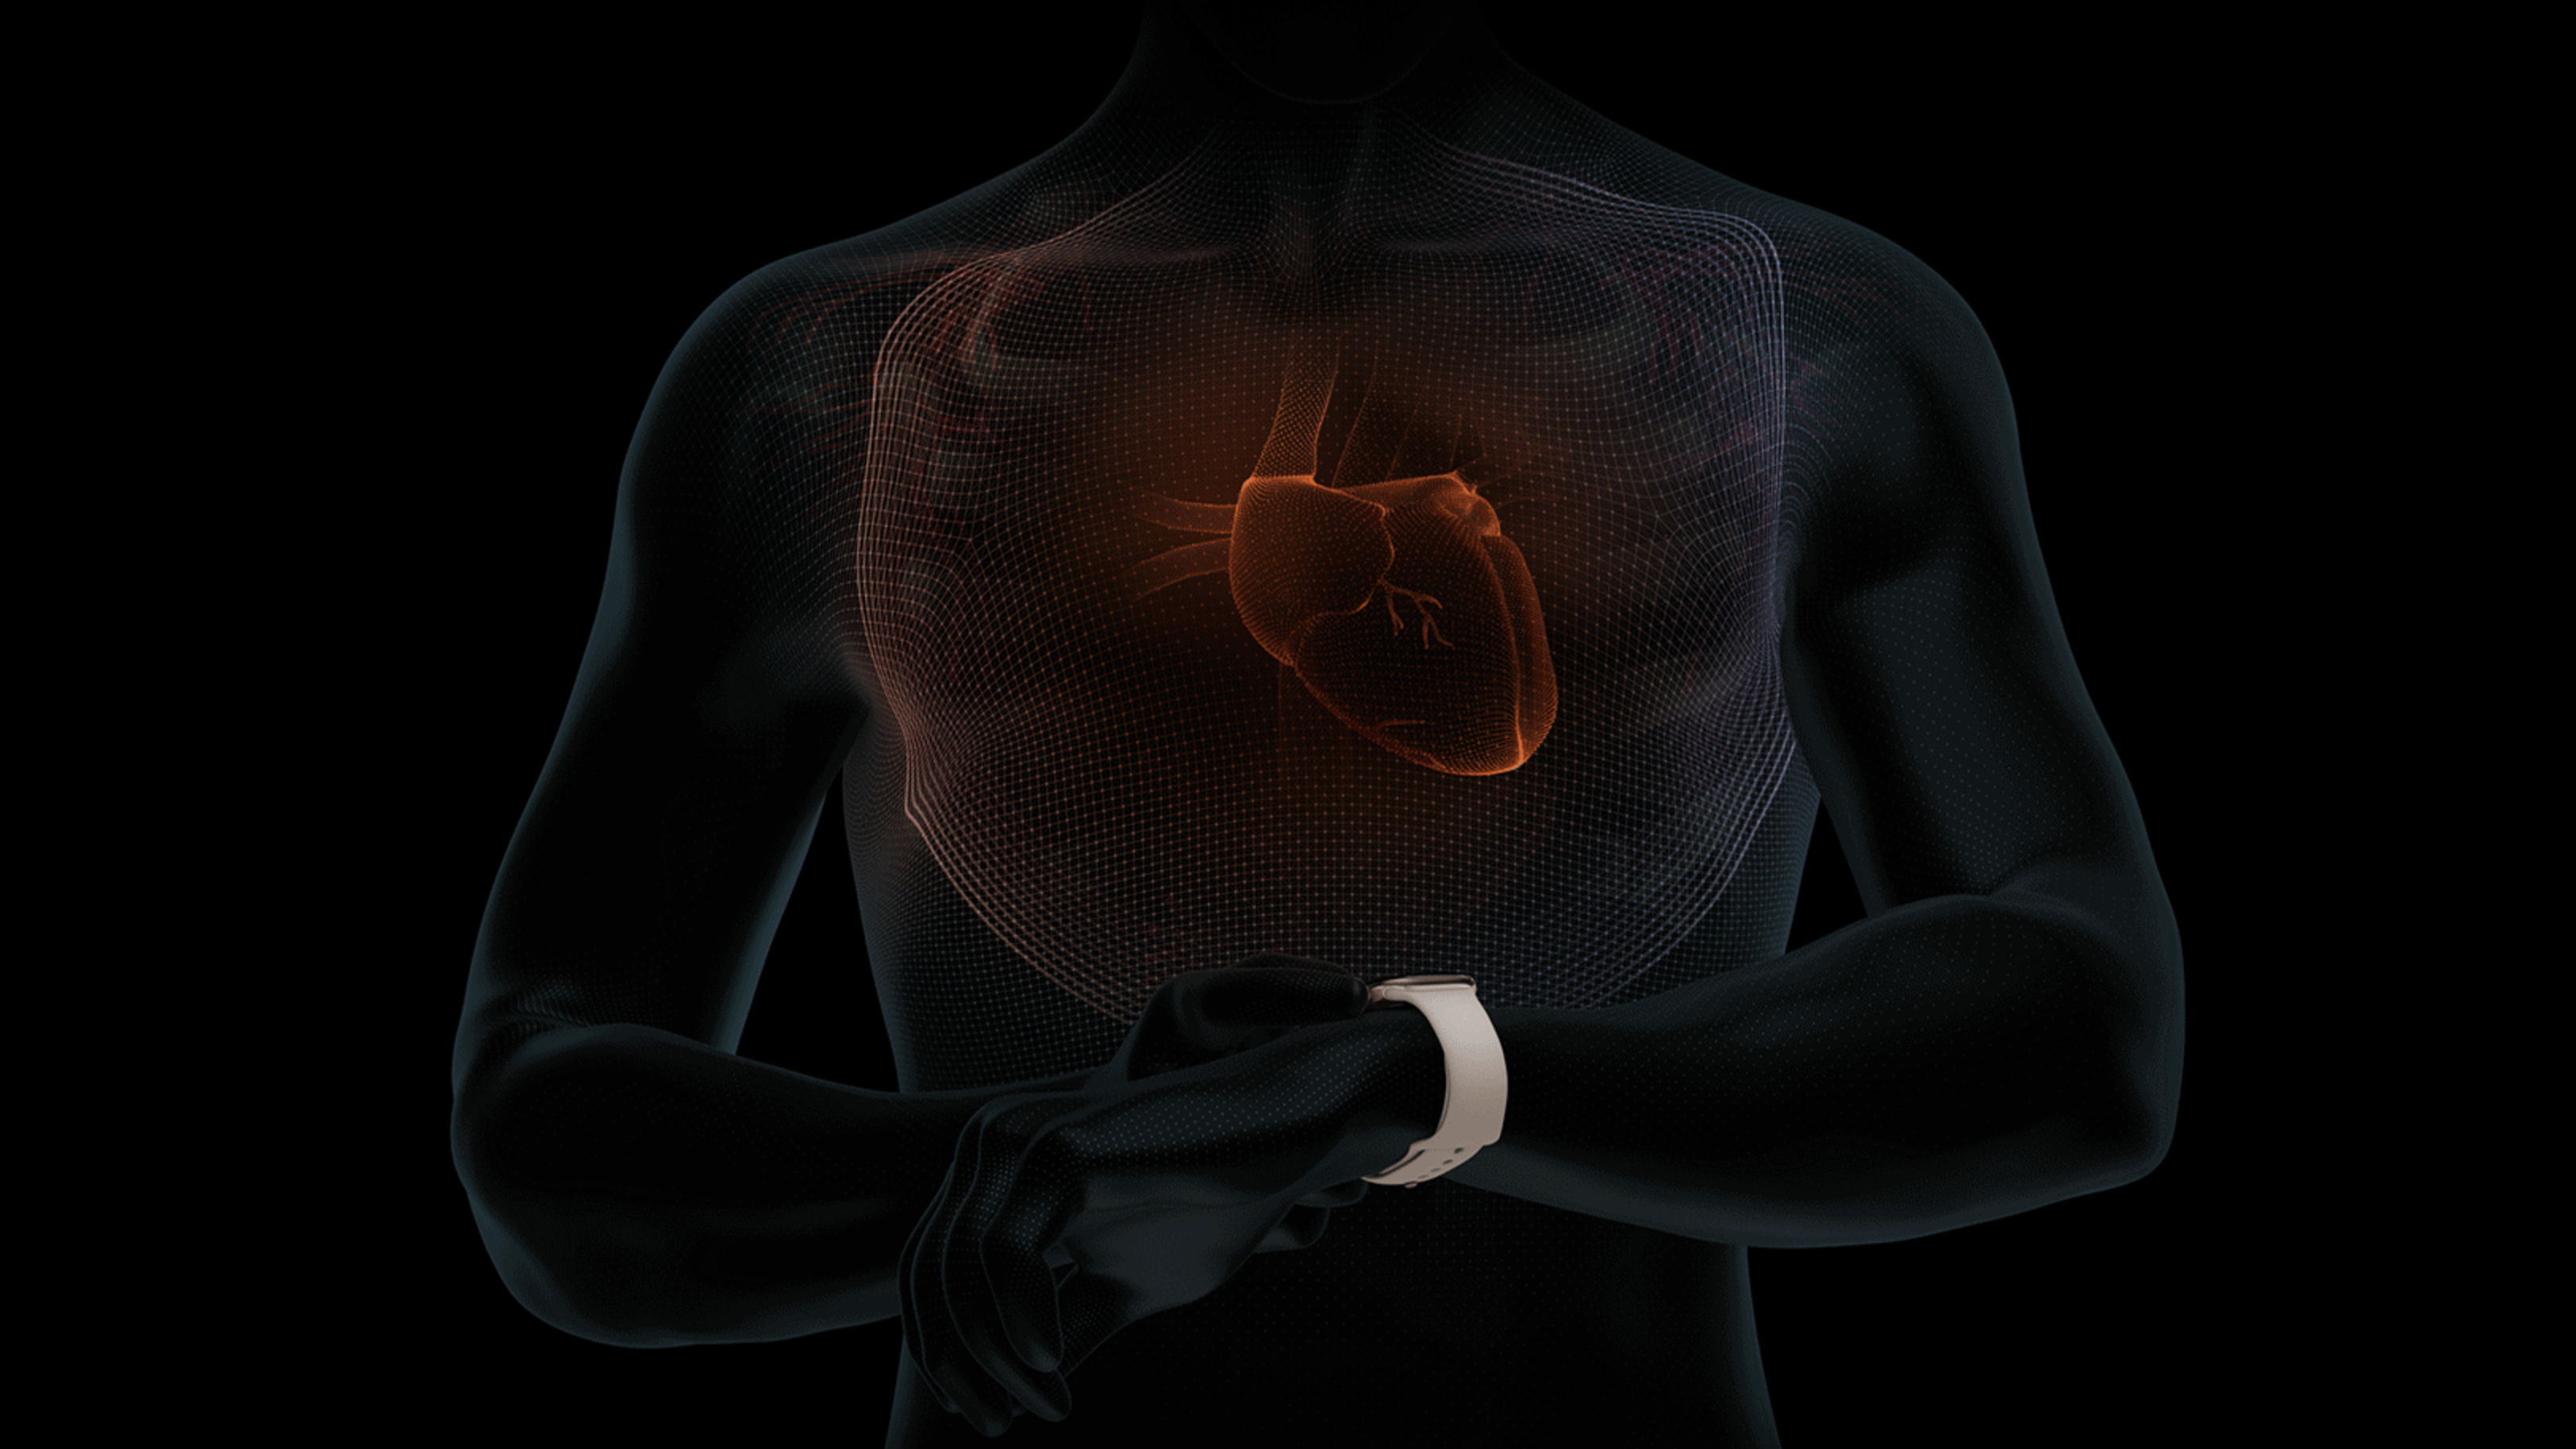 Tények és tévhitek a tüdőgyulladás tüneteiről és kezeléséről